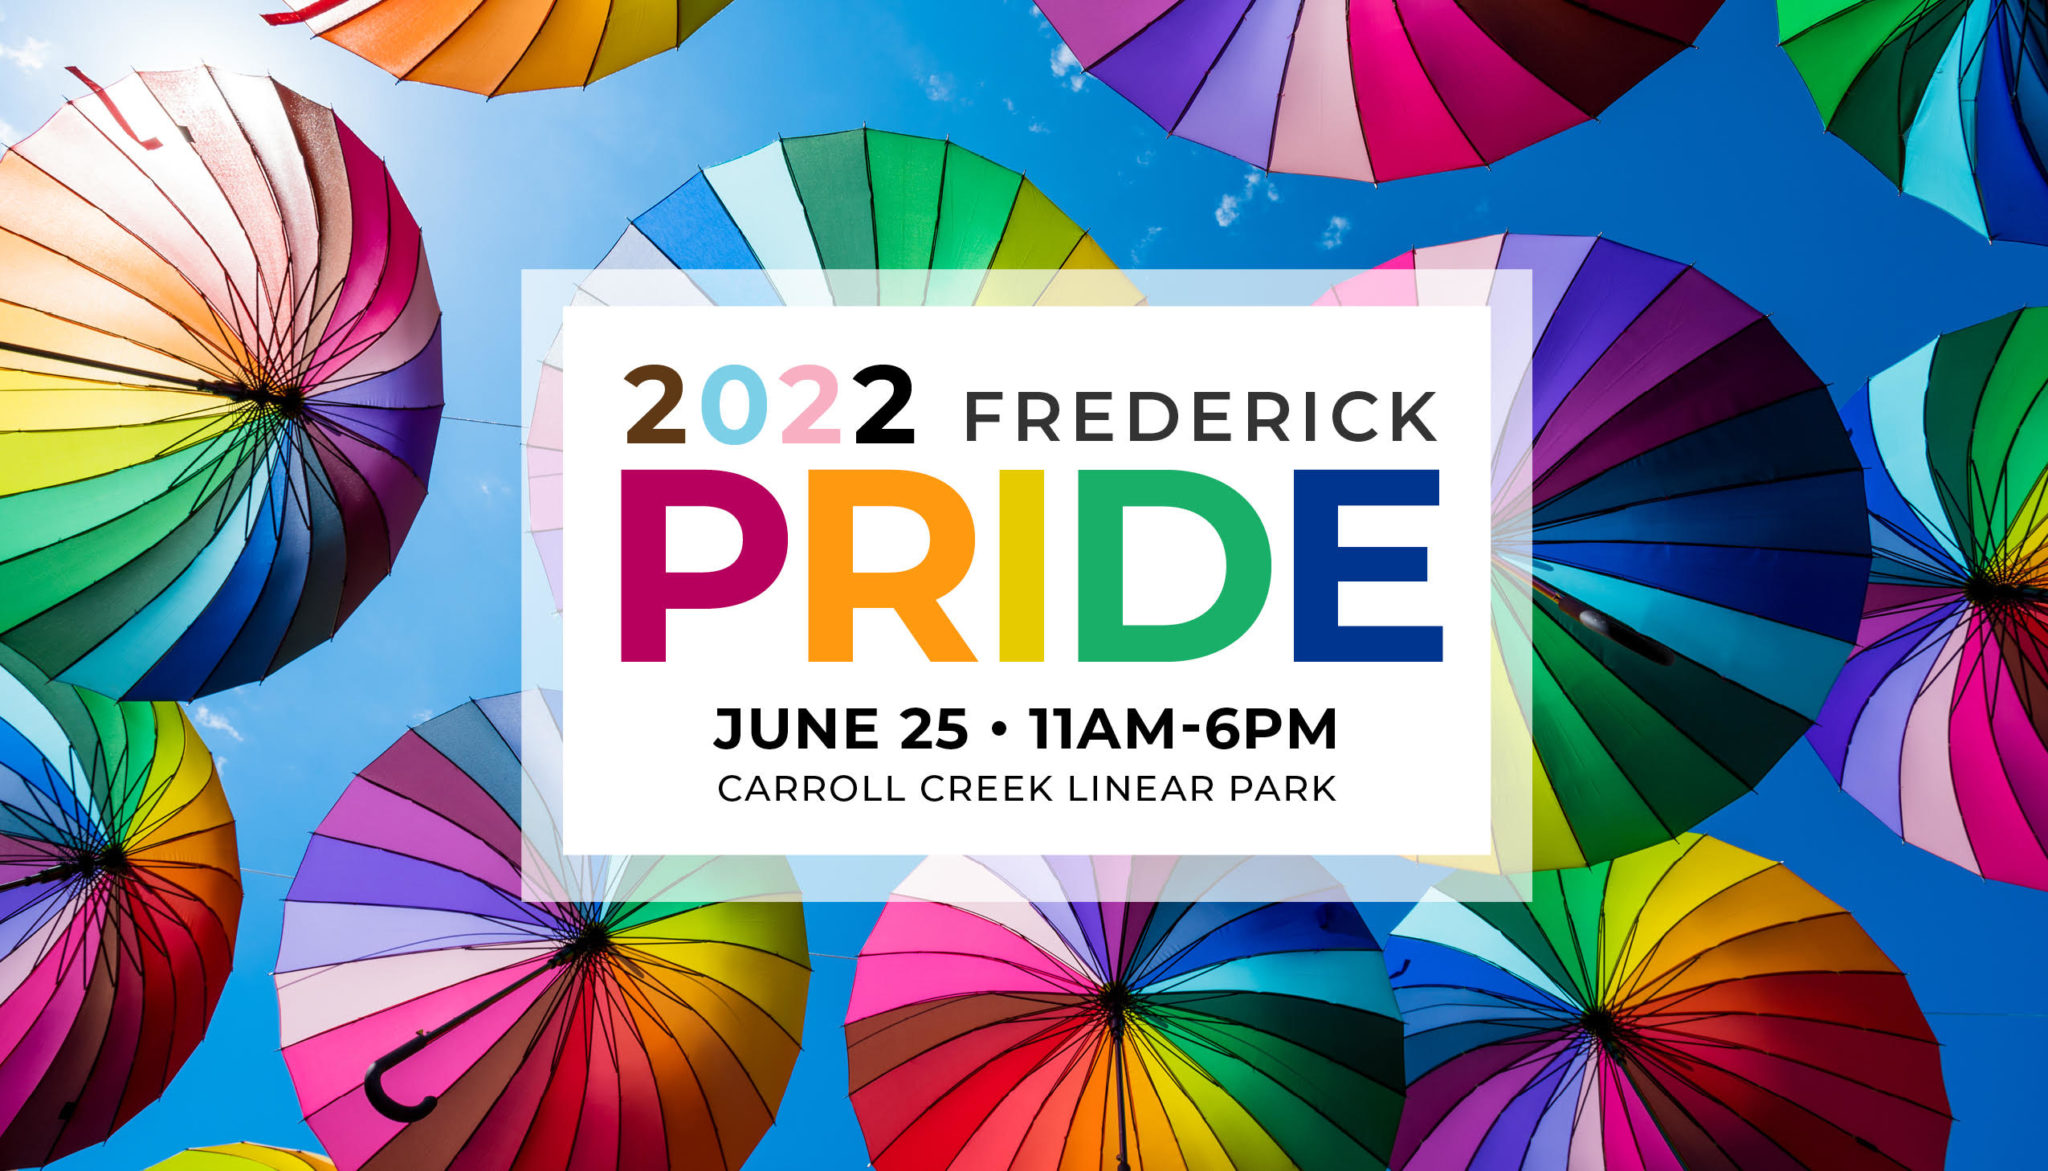 Frederick Pride Signup, Volunteer & Event Information